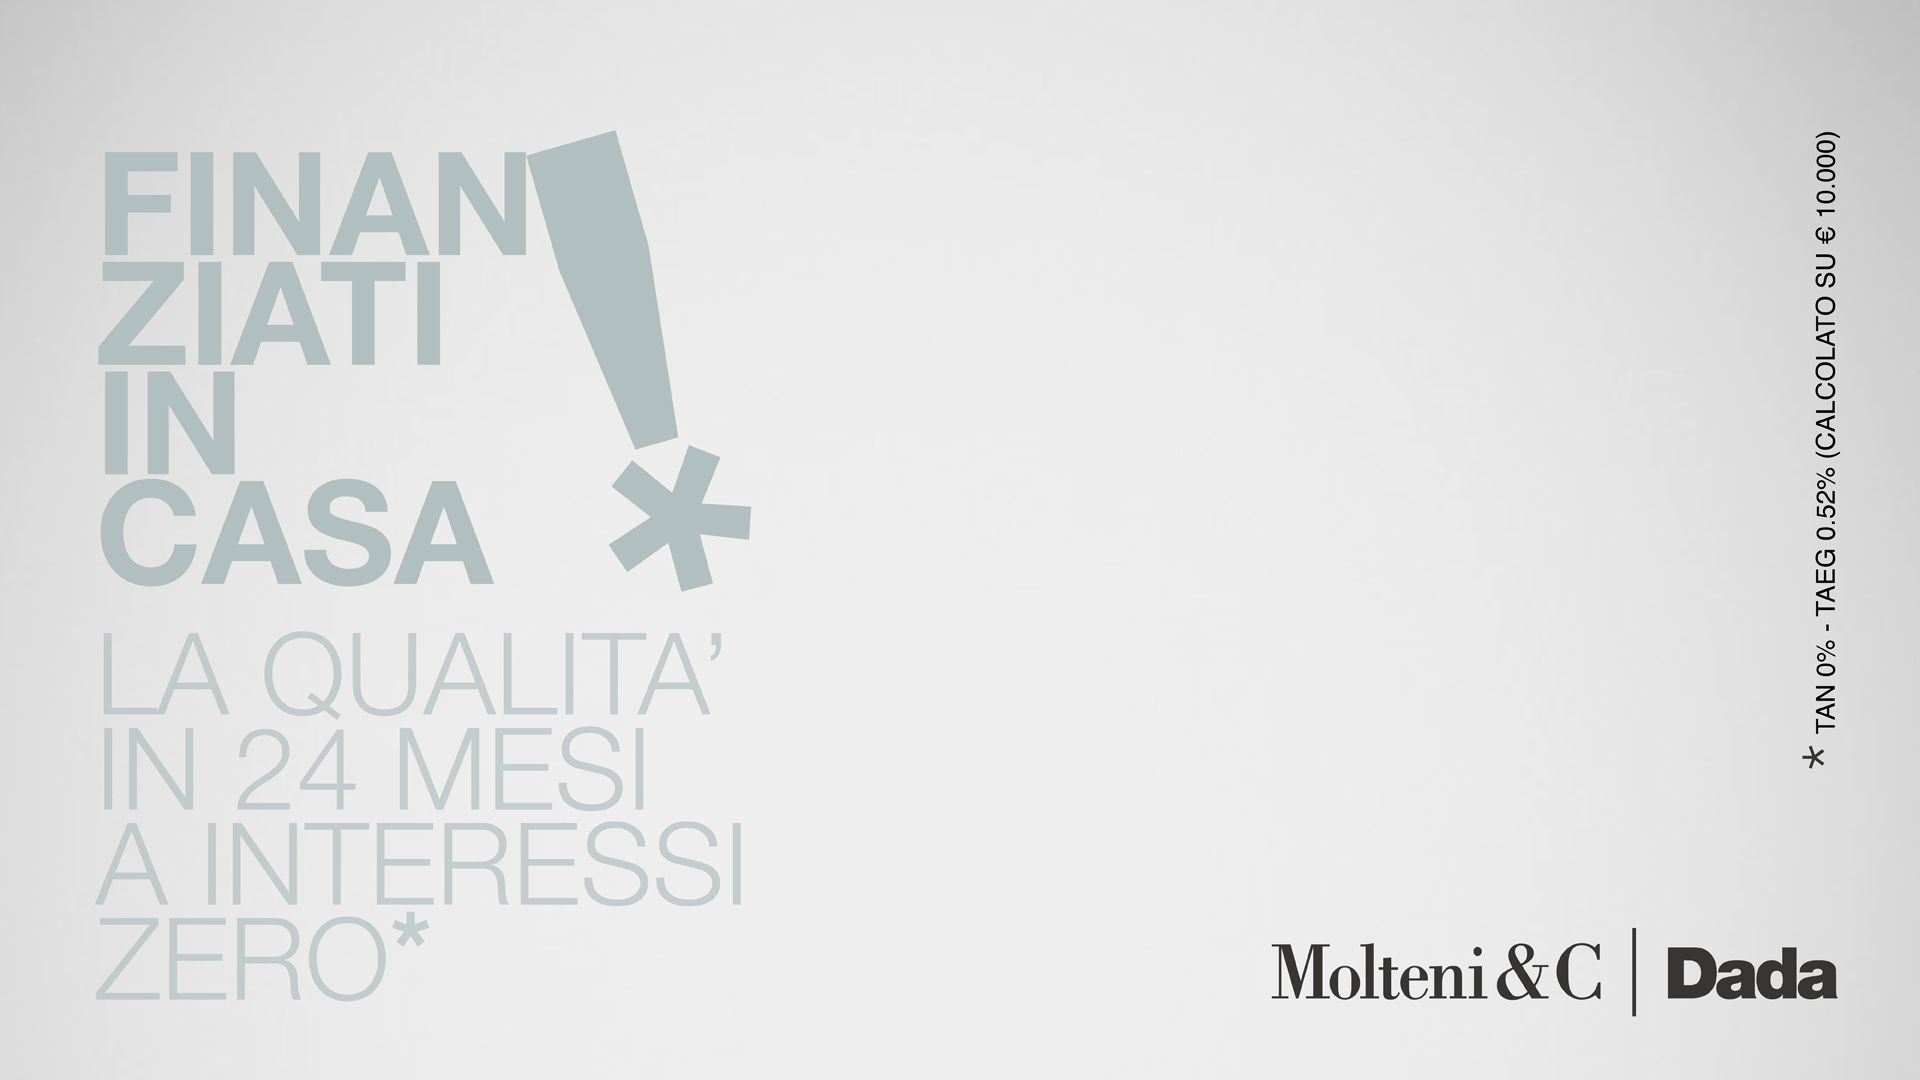 Finanziati in Casa Molteni&C | Dada